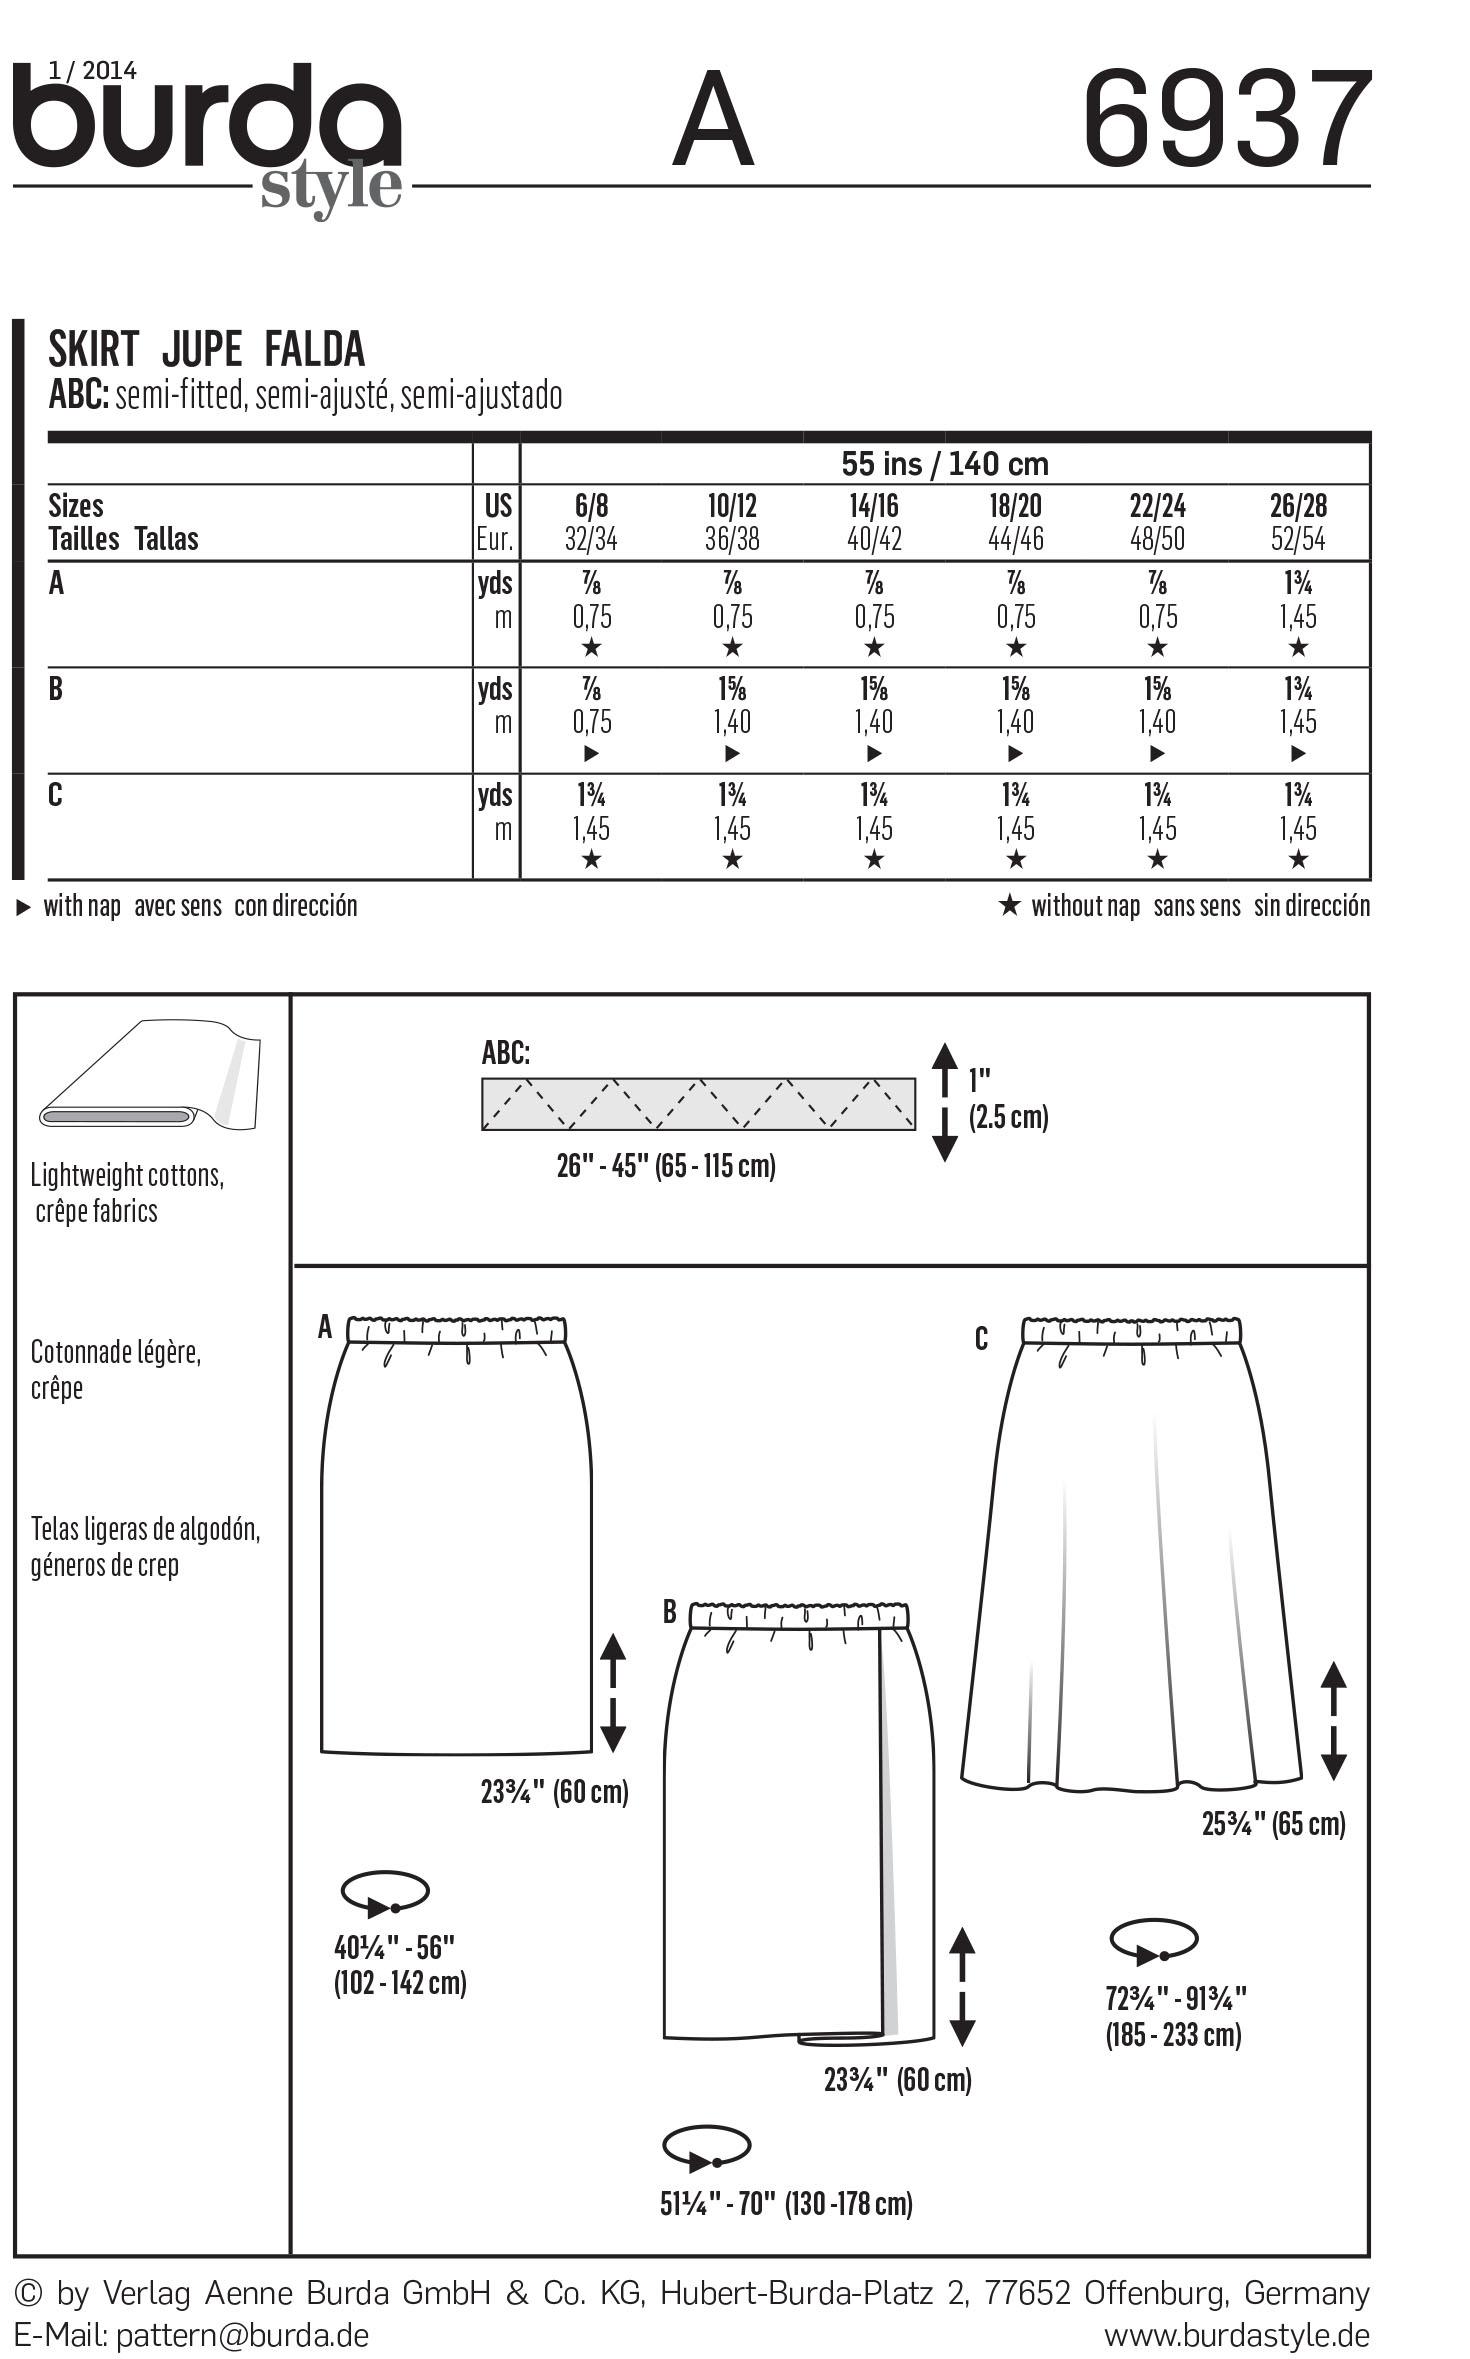 Burda B6937 Burda Skirts Sewing Pattern